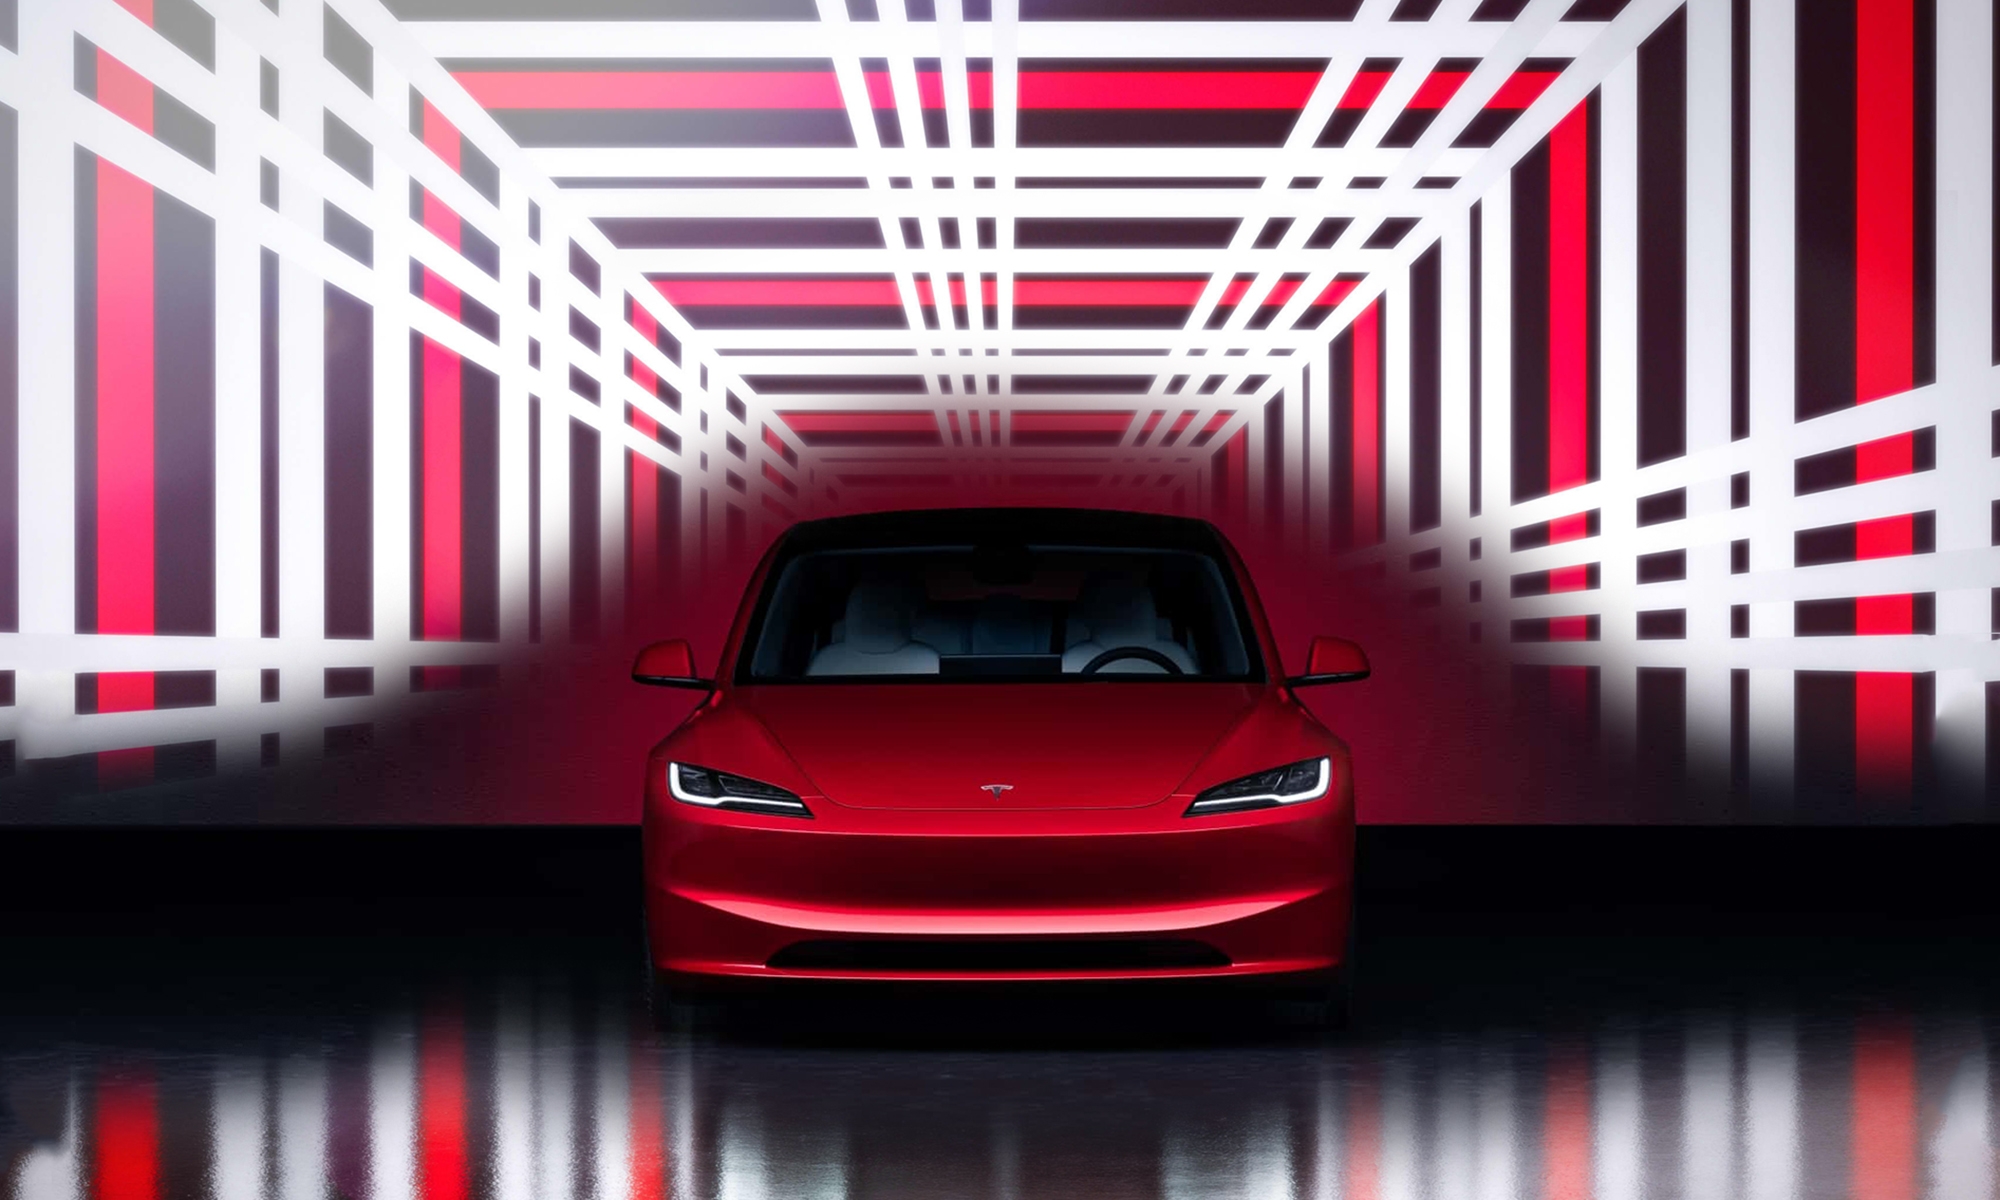 La futura versión de altas prestaciones del Tesla Model 3 ¿se llamará Performance o Plaid?